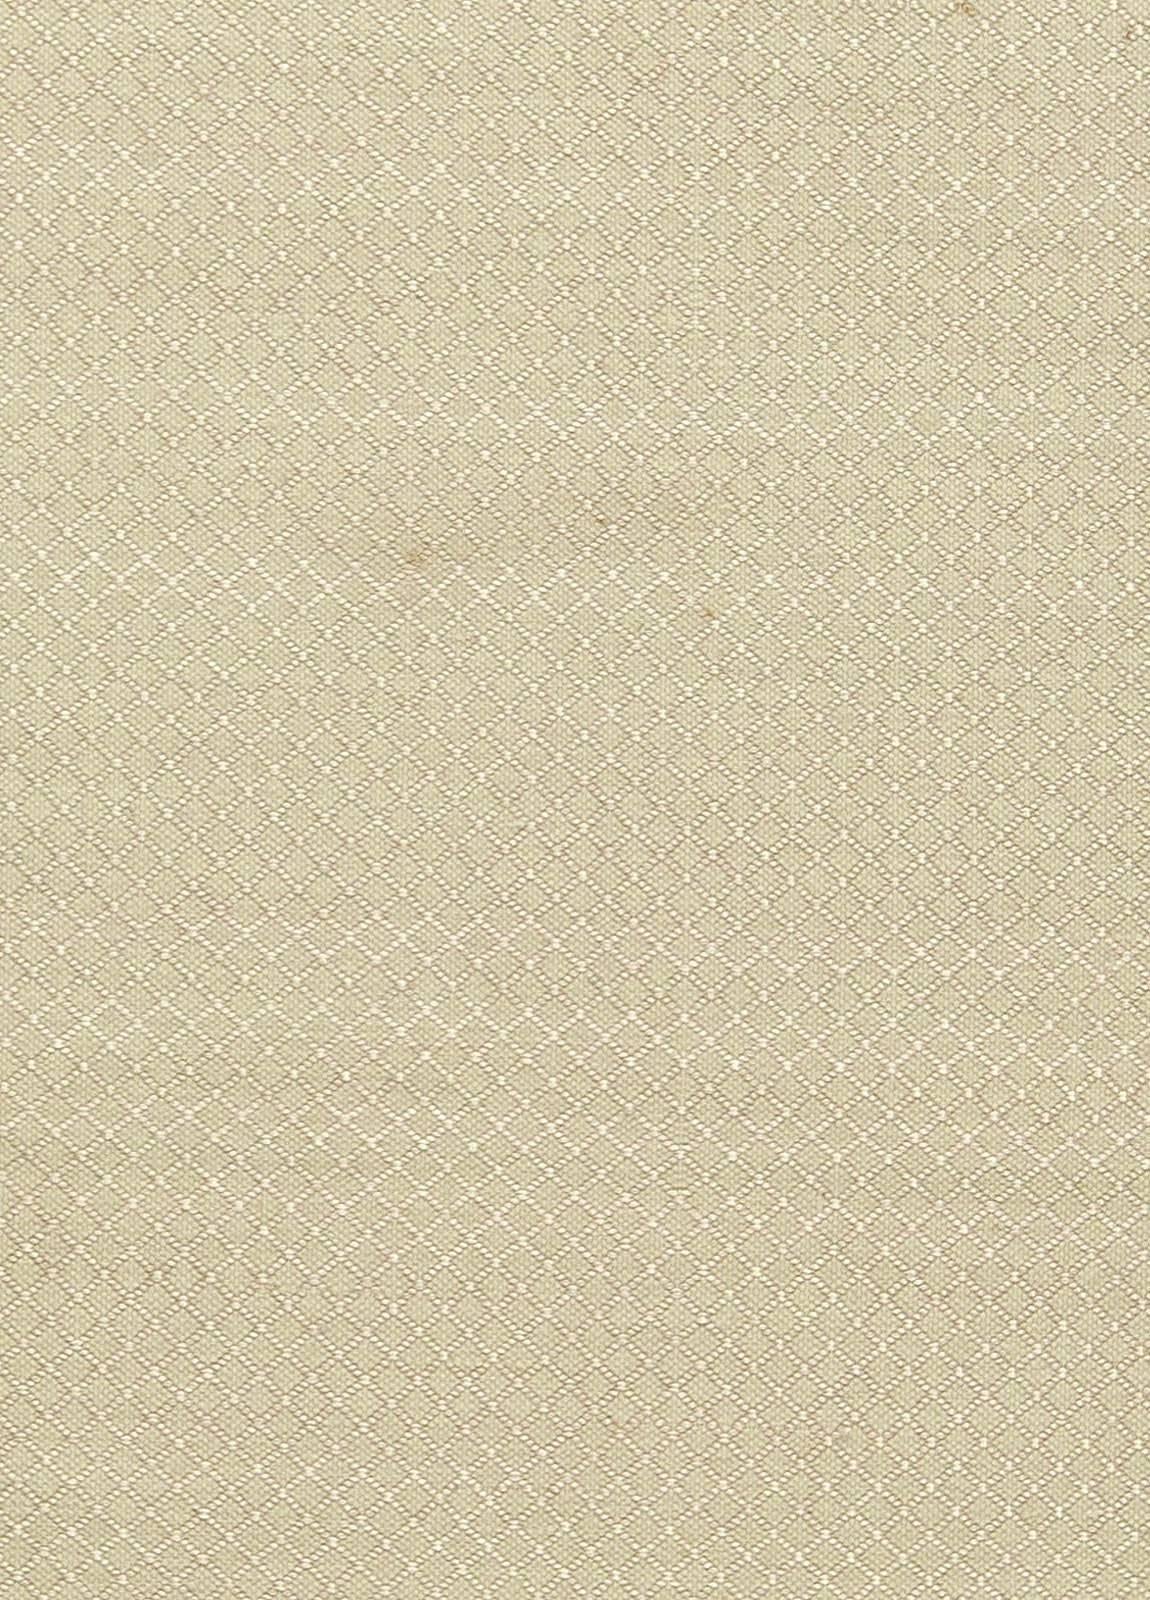 Moderner geometrischer beigefarbener flachgewebter Viskoseteppich von Doris Leslie Blau
Größe: 12'0